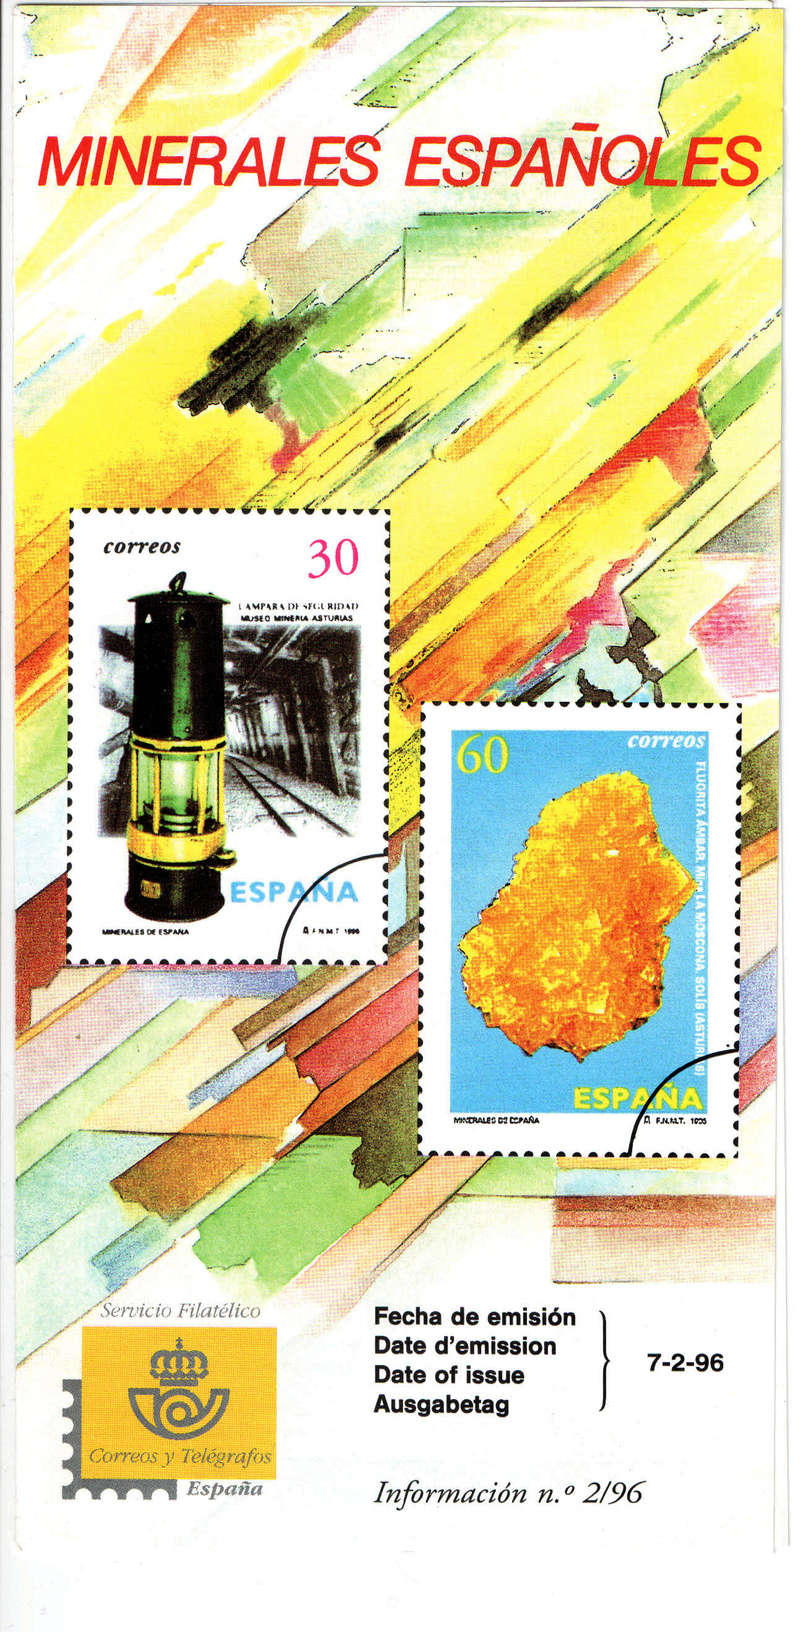 FILATELIA - el mundo de los sellos, otra colección. - Página 2 Colec_12